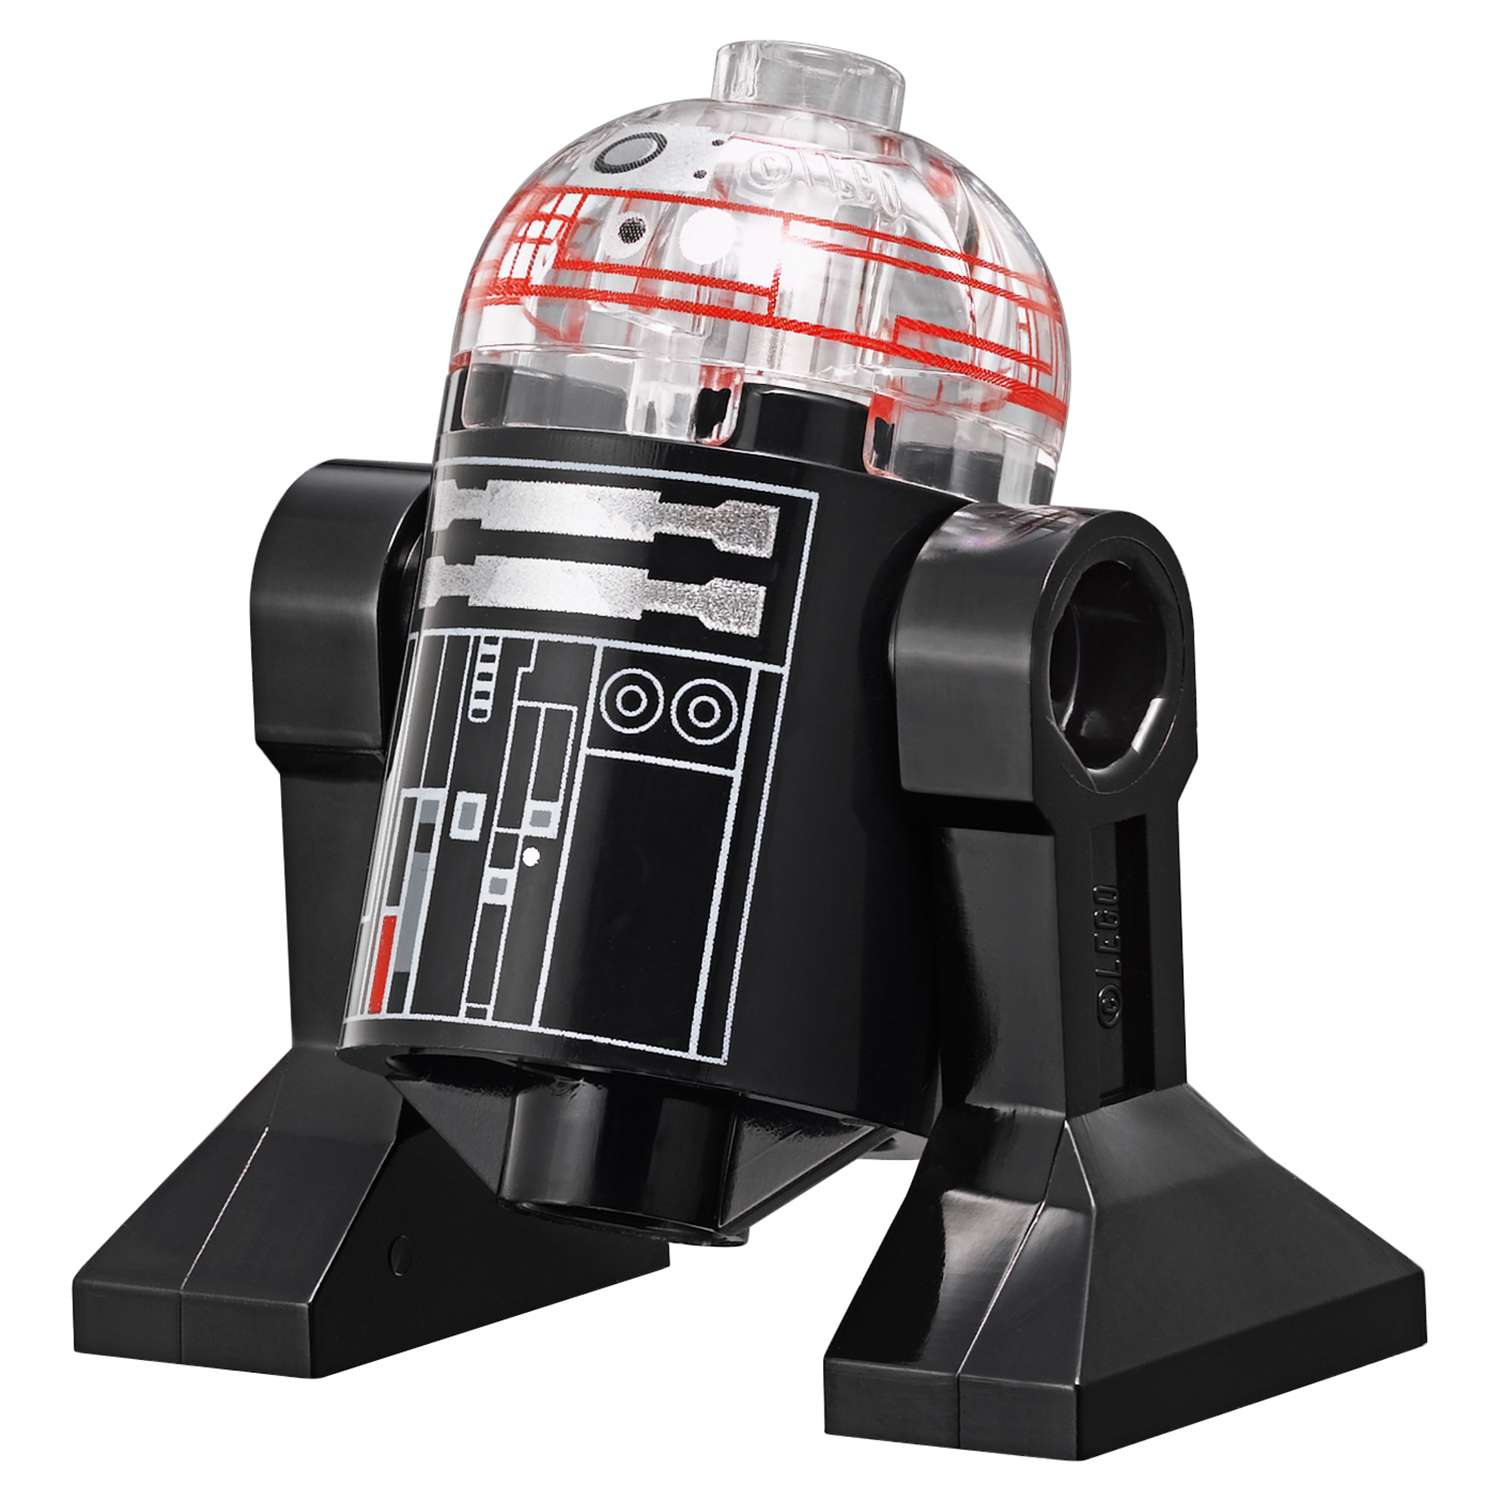 Конструктор LEGO Star Wars TM Имперский десантный корабль™ (Imperial Assault Carrier™) (75106) - фото 19